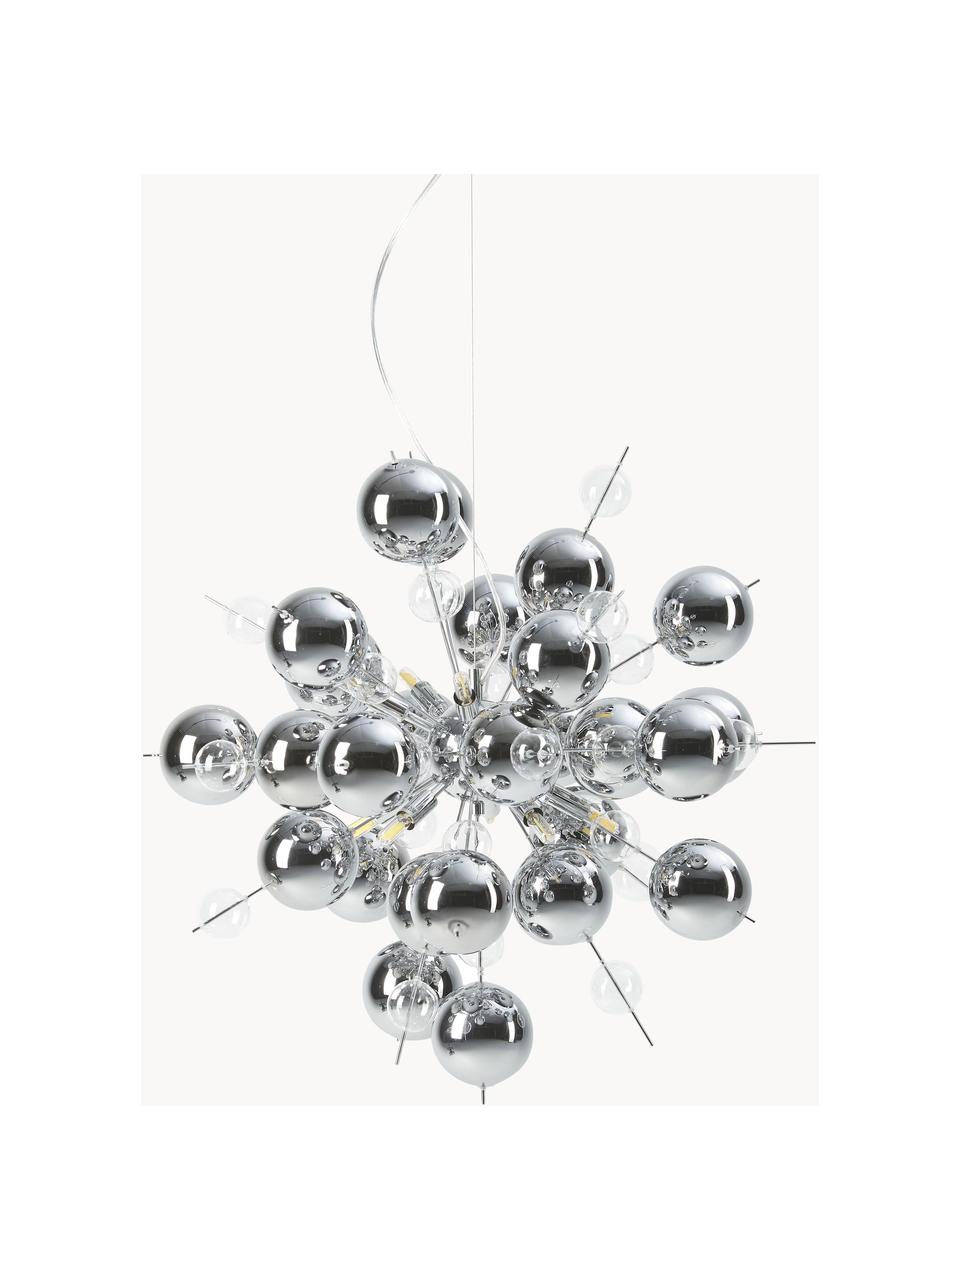 Lampa wisząca ze szklanych kul Explosion, Odcienie srebrnego, Ø 65 cm